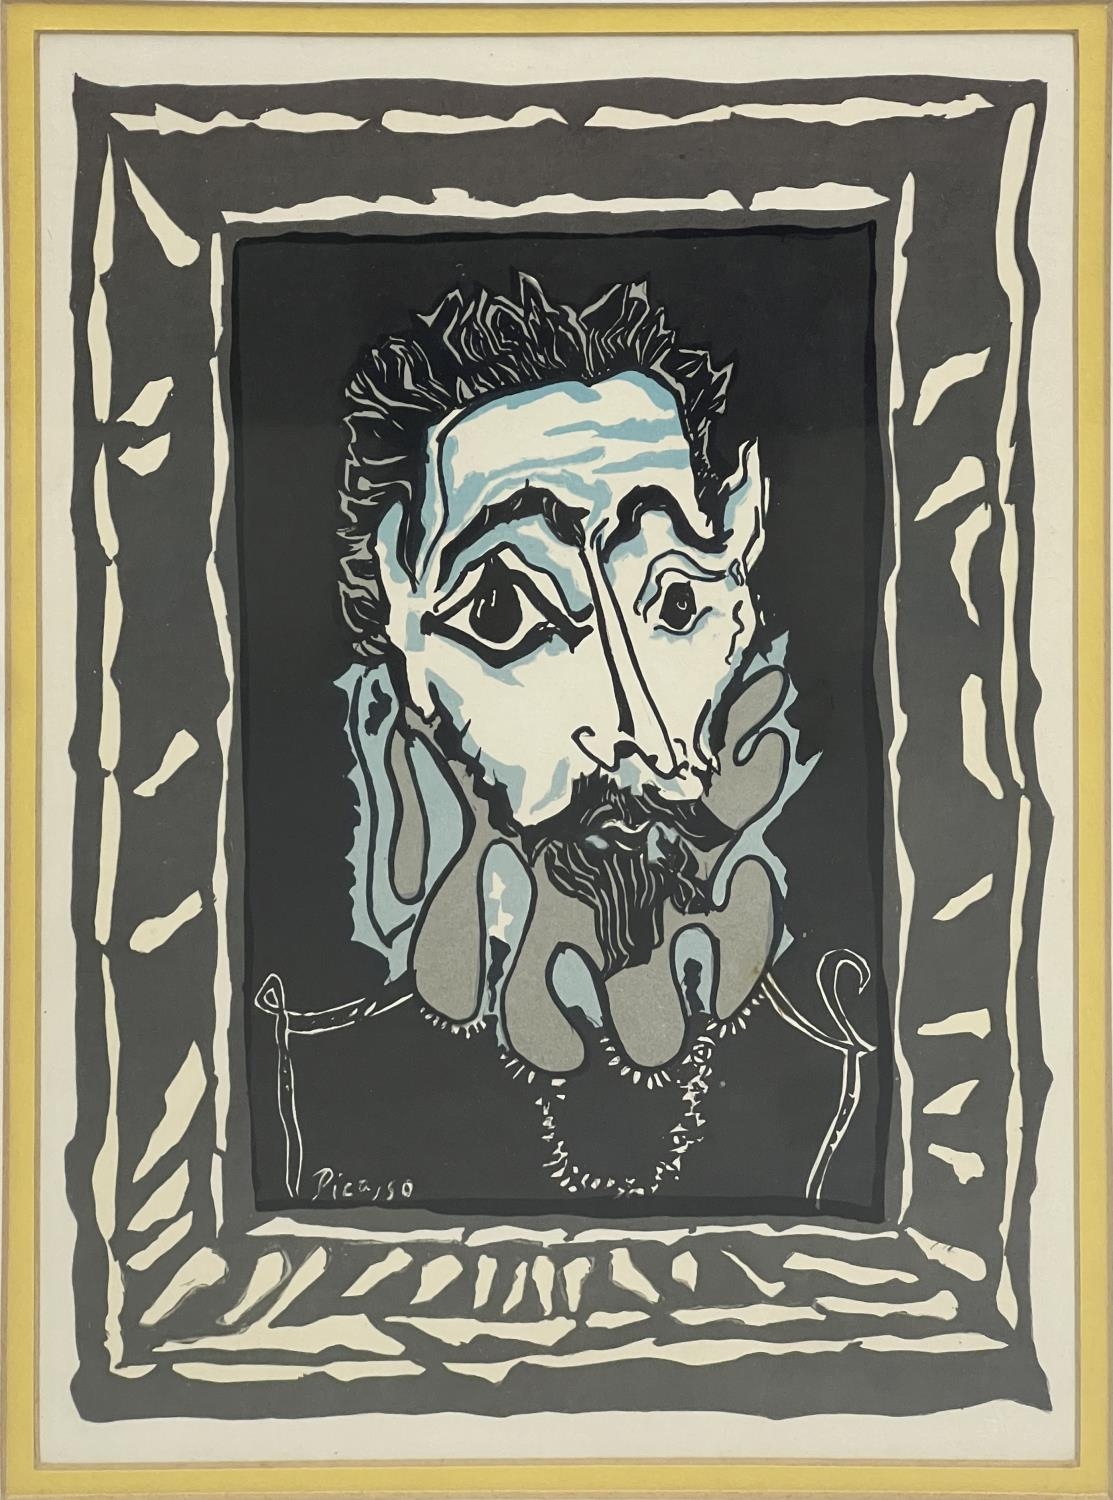 AFTER PABLO PICASSO (1881-1993), L'Homme a la Fraise, 1963', lithograph, 30cm x 22cm, framed. - Image 2 of 2